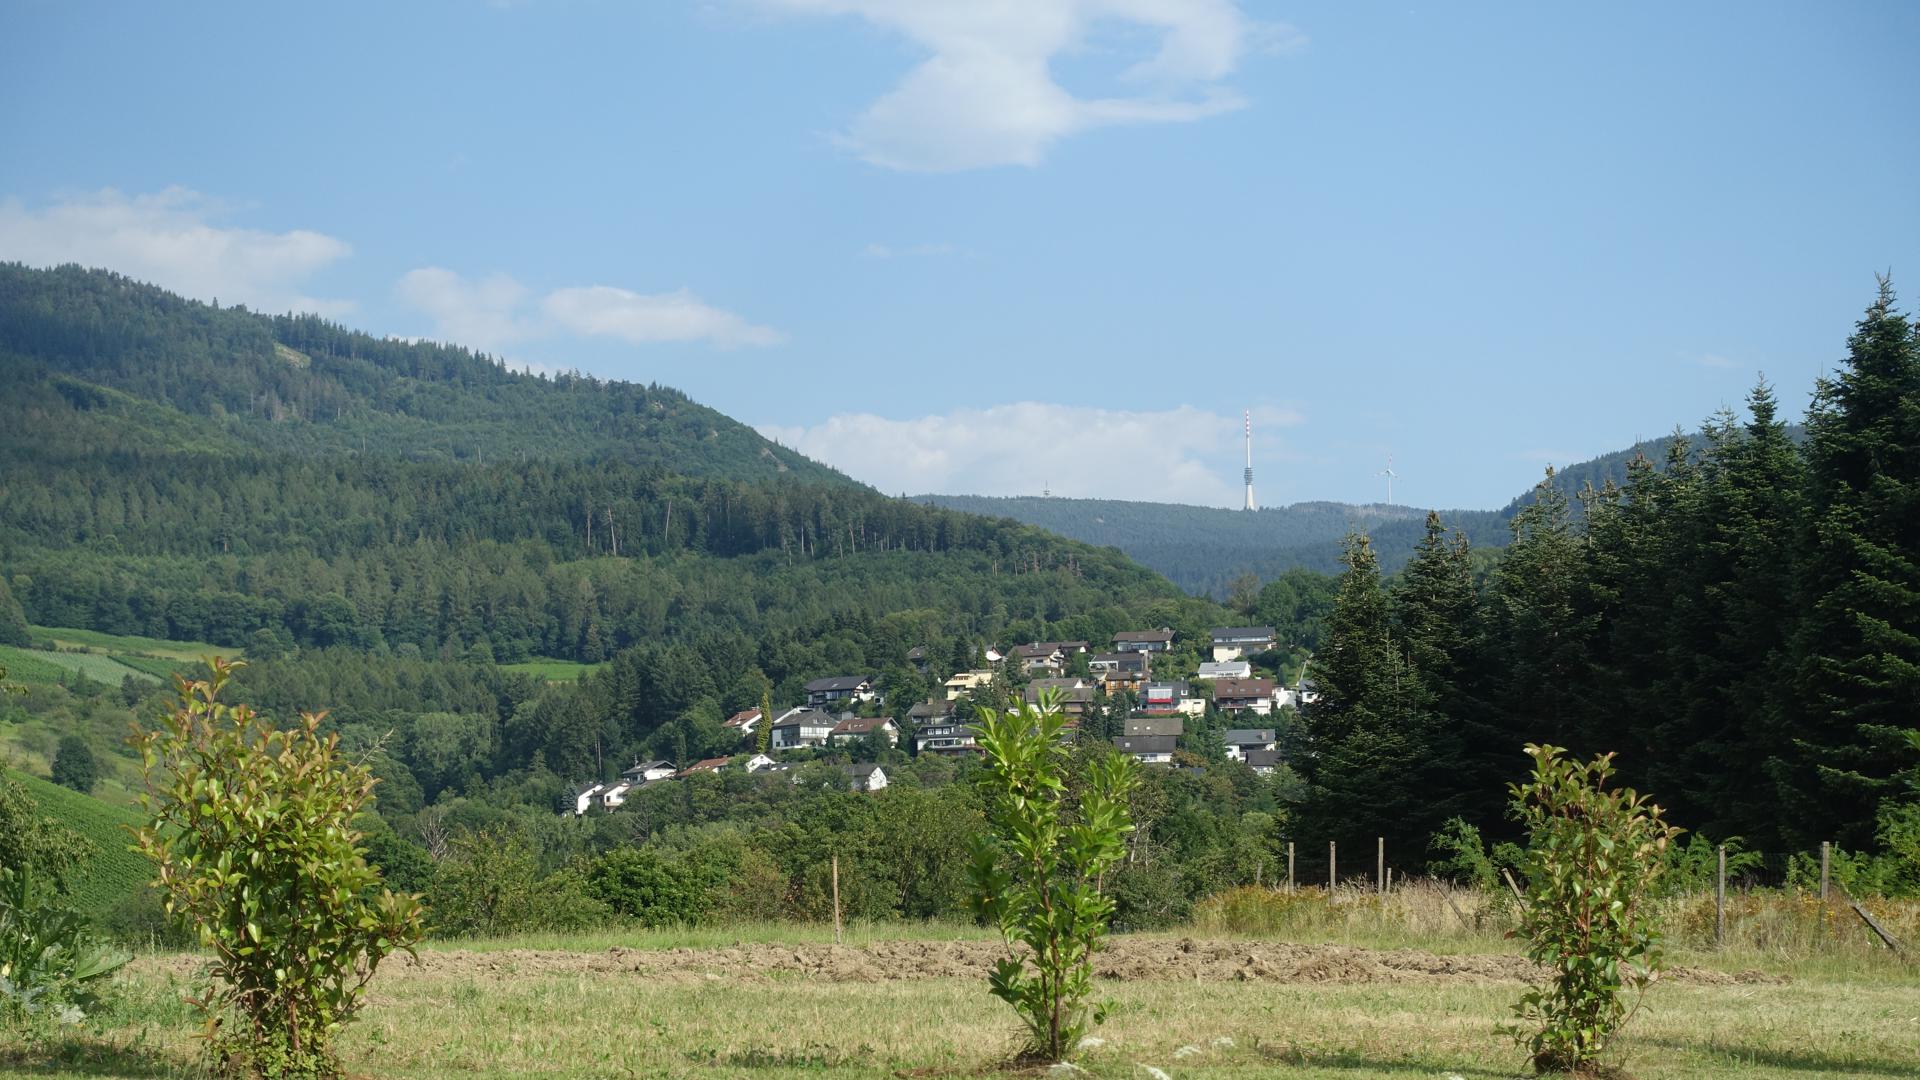 Blick auf den Schwarzwald über Ackerland hinweg. Auf einem der Berge steht ein moderner Fernsehturm. 